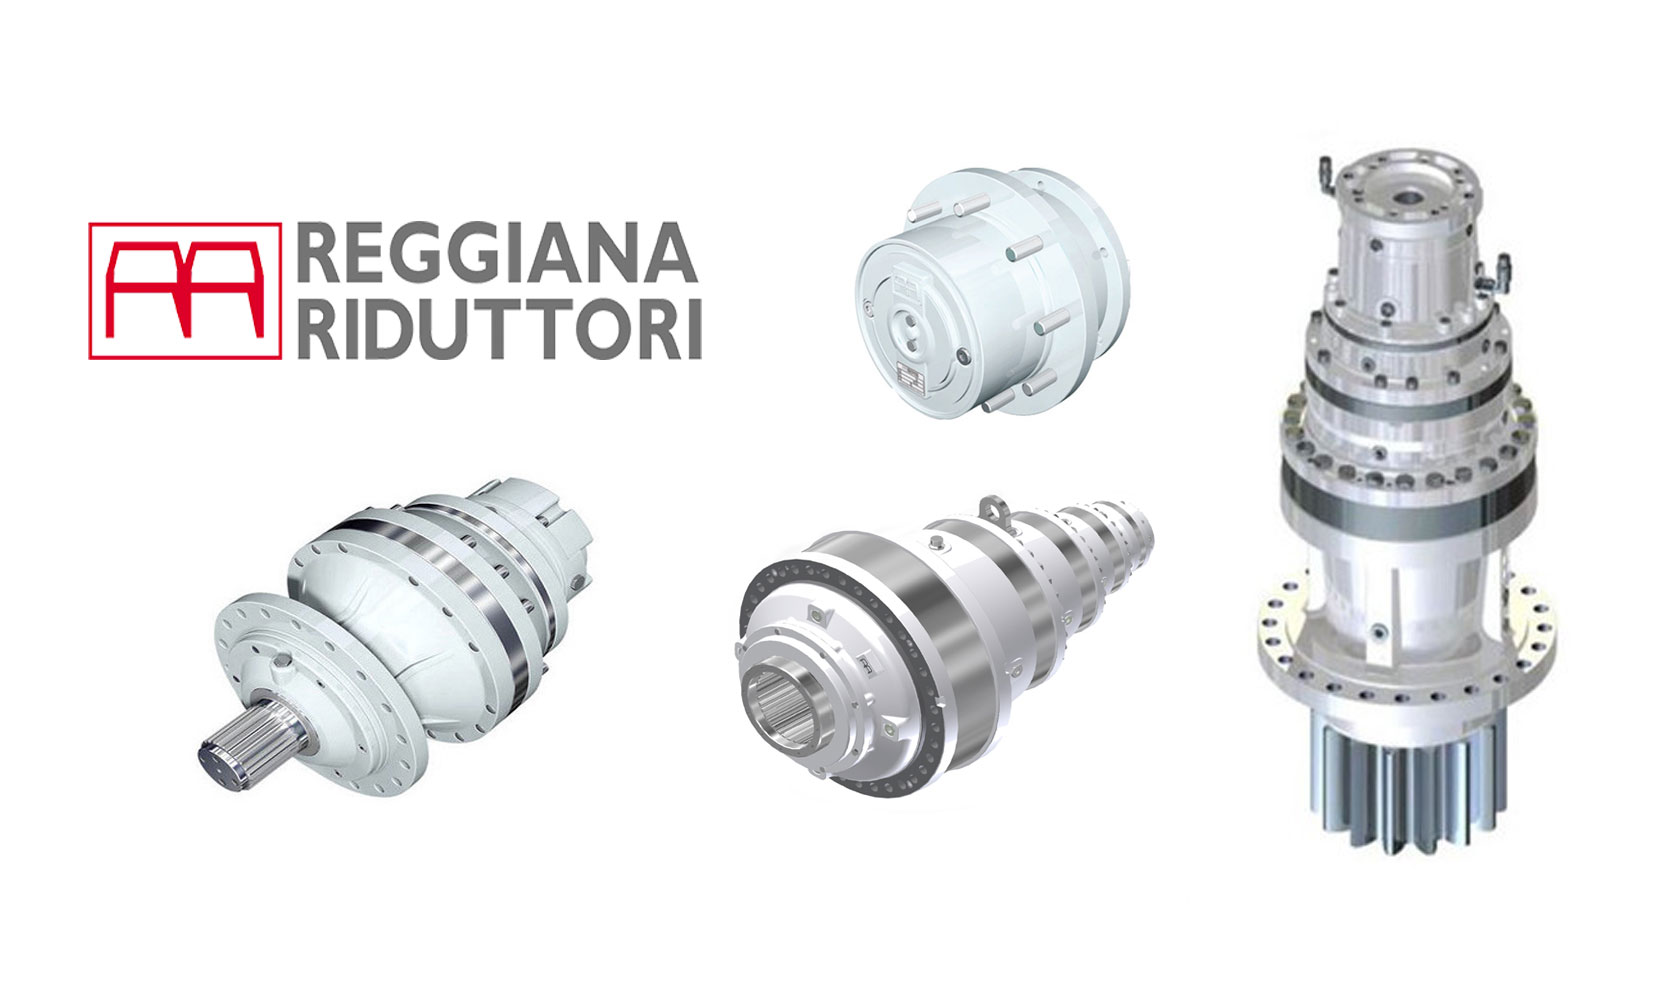 Frankonia Hydraulik Reggiana Riduttori Produkt-Banner, verschiedene Getriebe und Logo